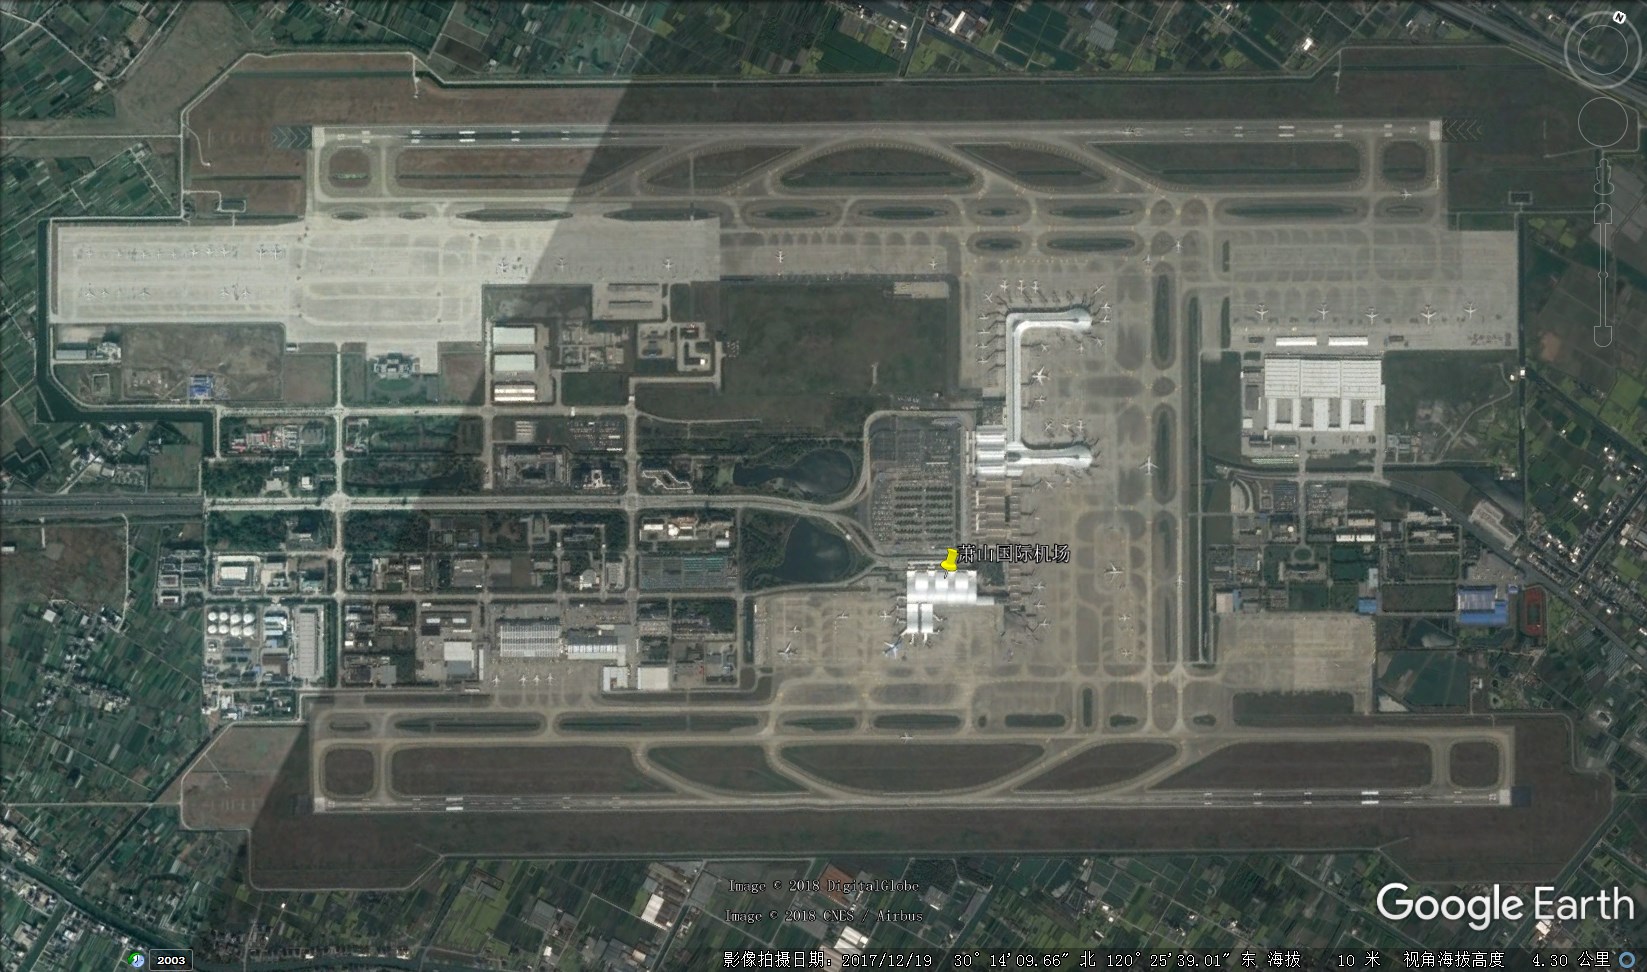 跑道宽度:60米 舟山朱家尖机场 图中可以看到新的航站楼正在施工